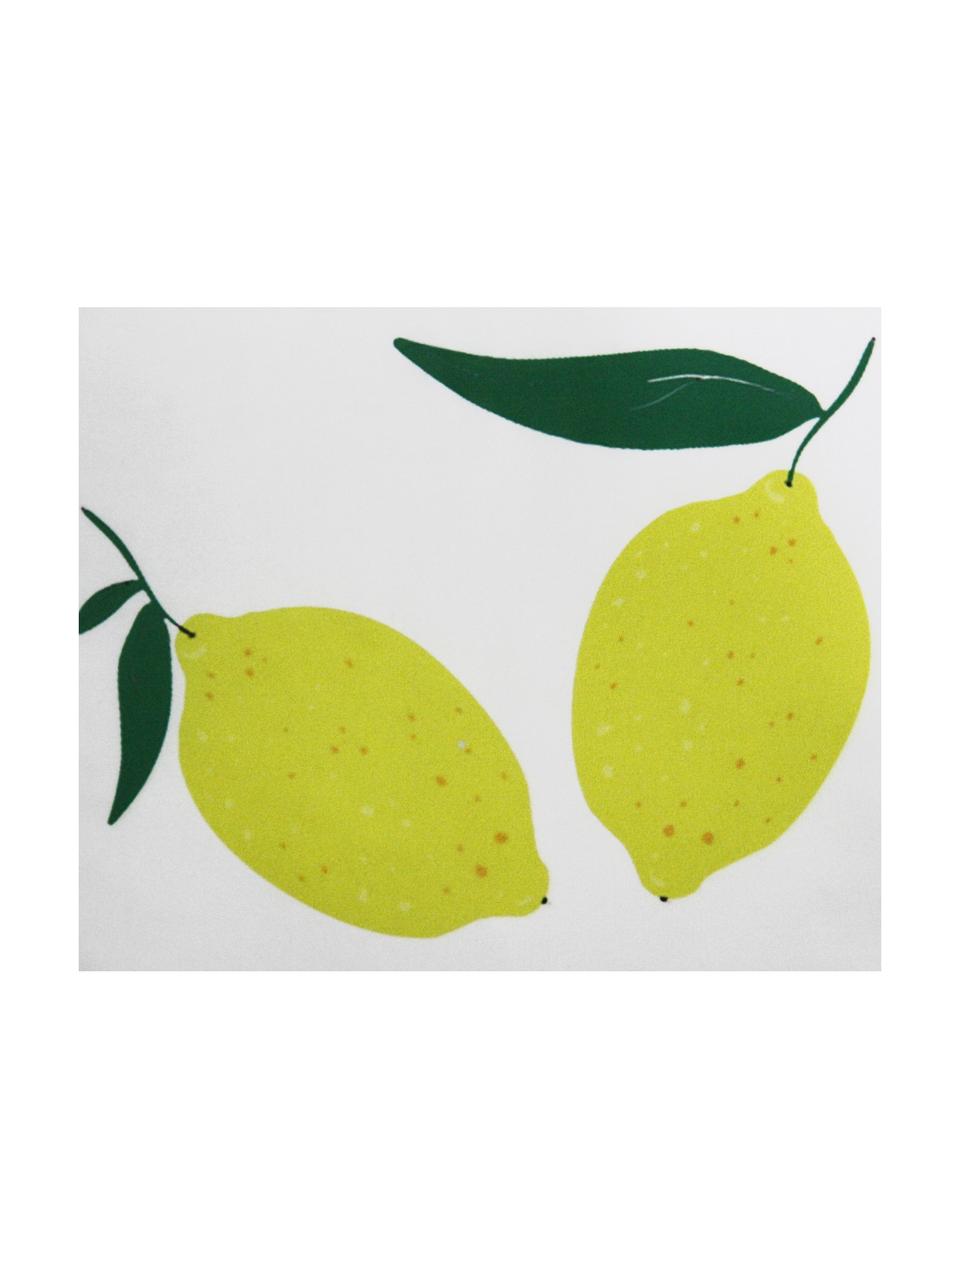 Dubbelzijdige kussenhoes Lemon, Polyester, Wit, geel, groen, 45 x 45 cm